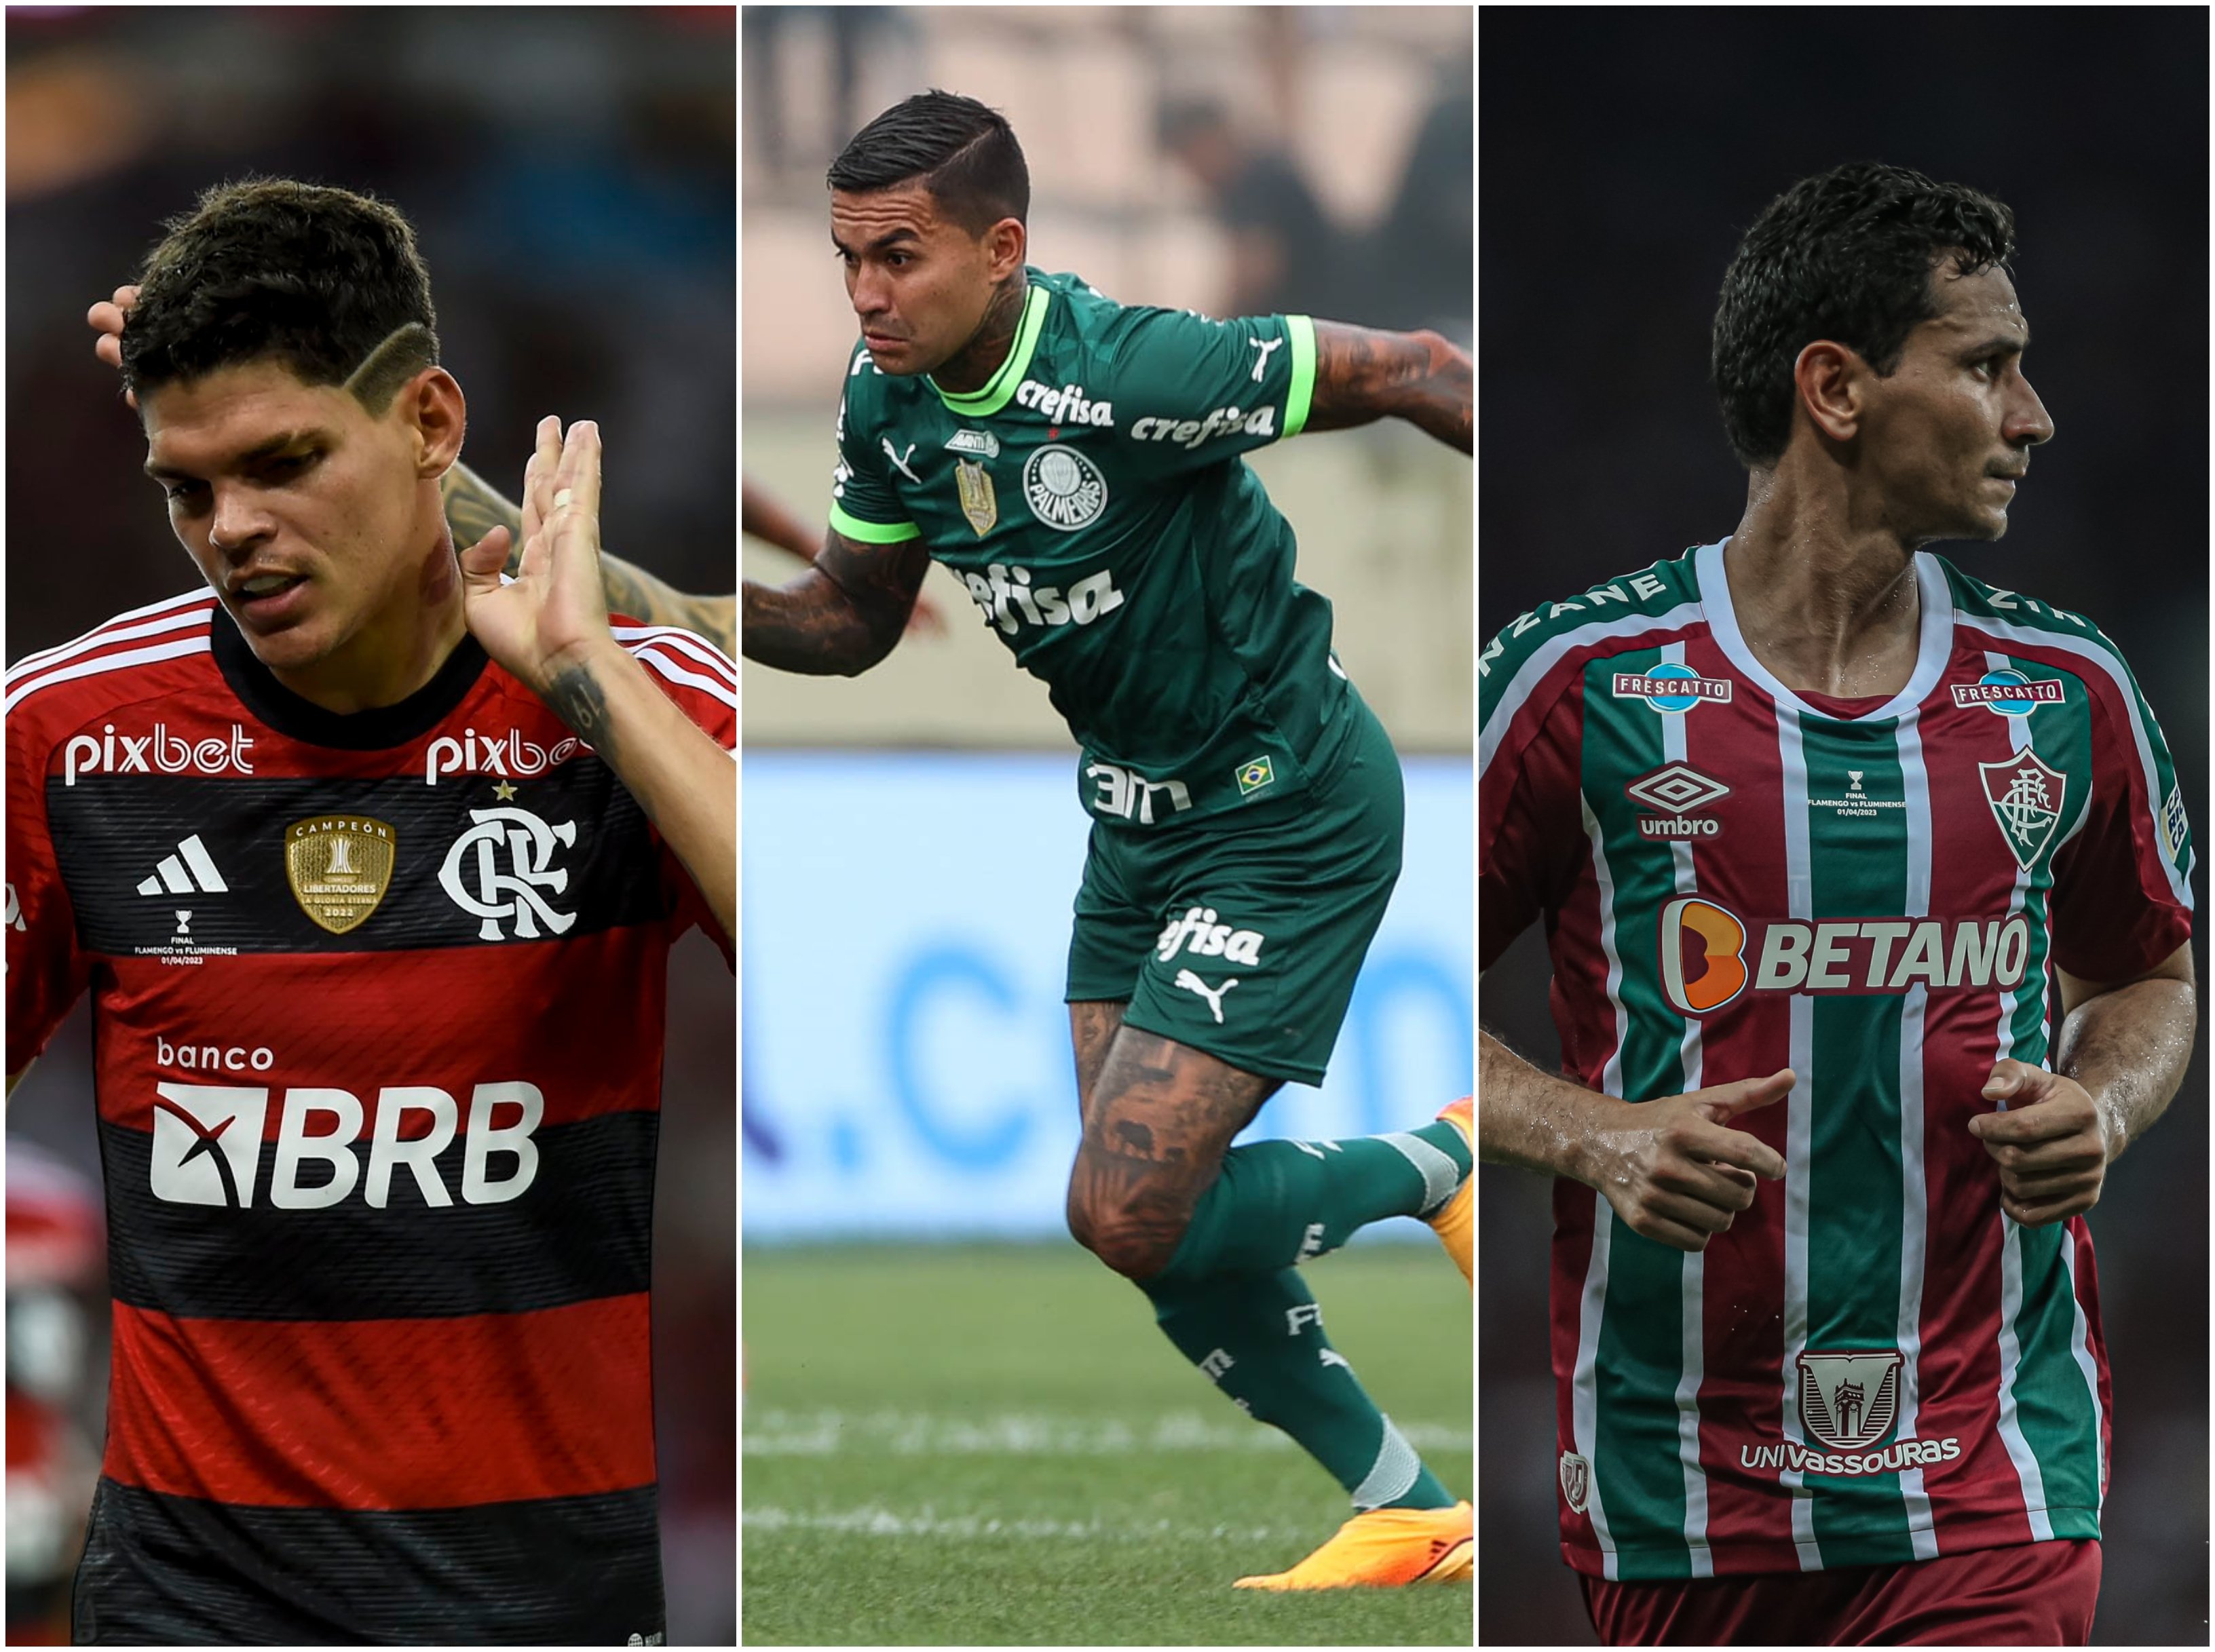 Veja o que o Flamengo precisa para se classificar na Libertadores - Coluna  do Fla